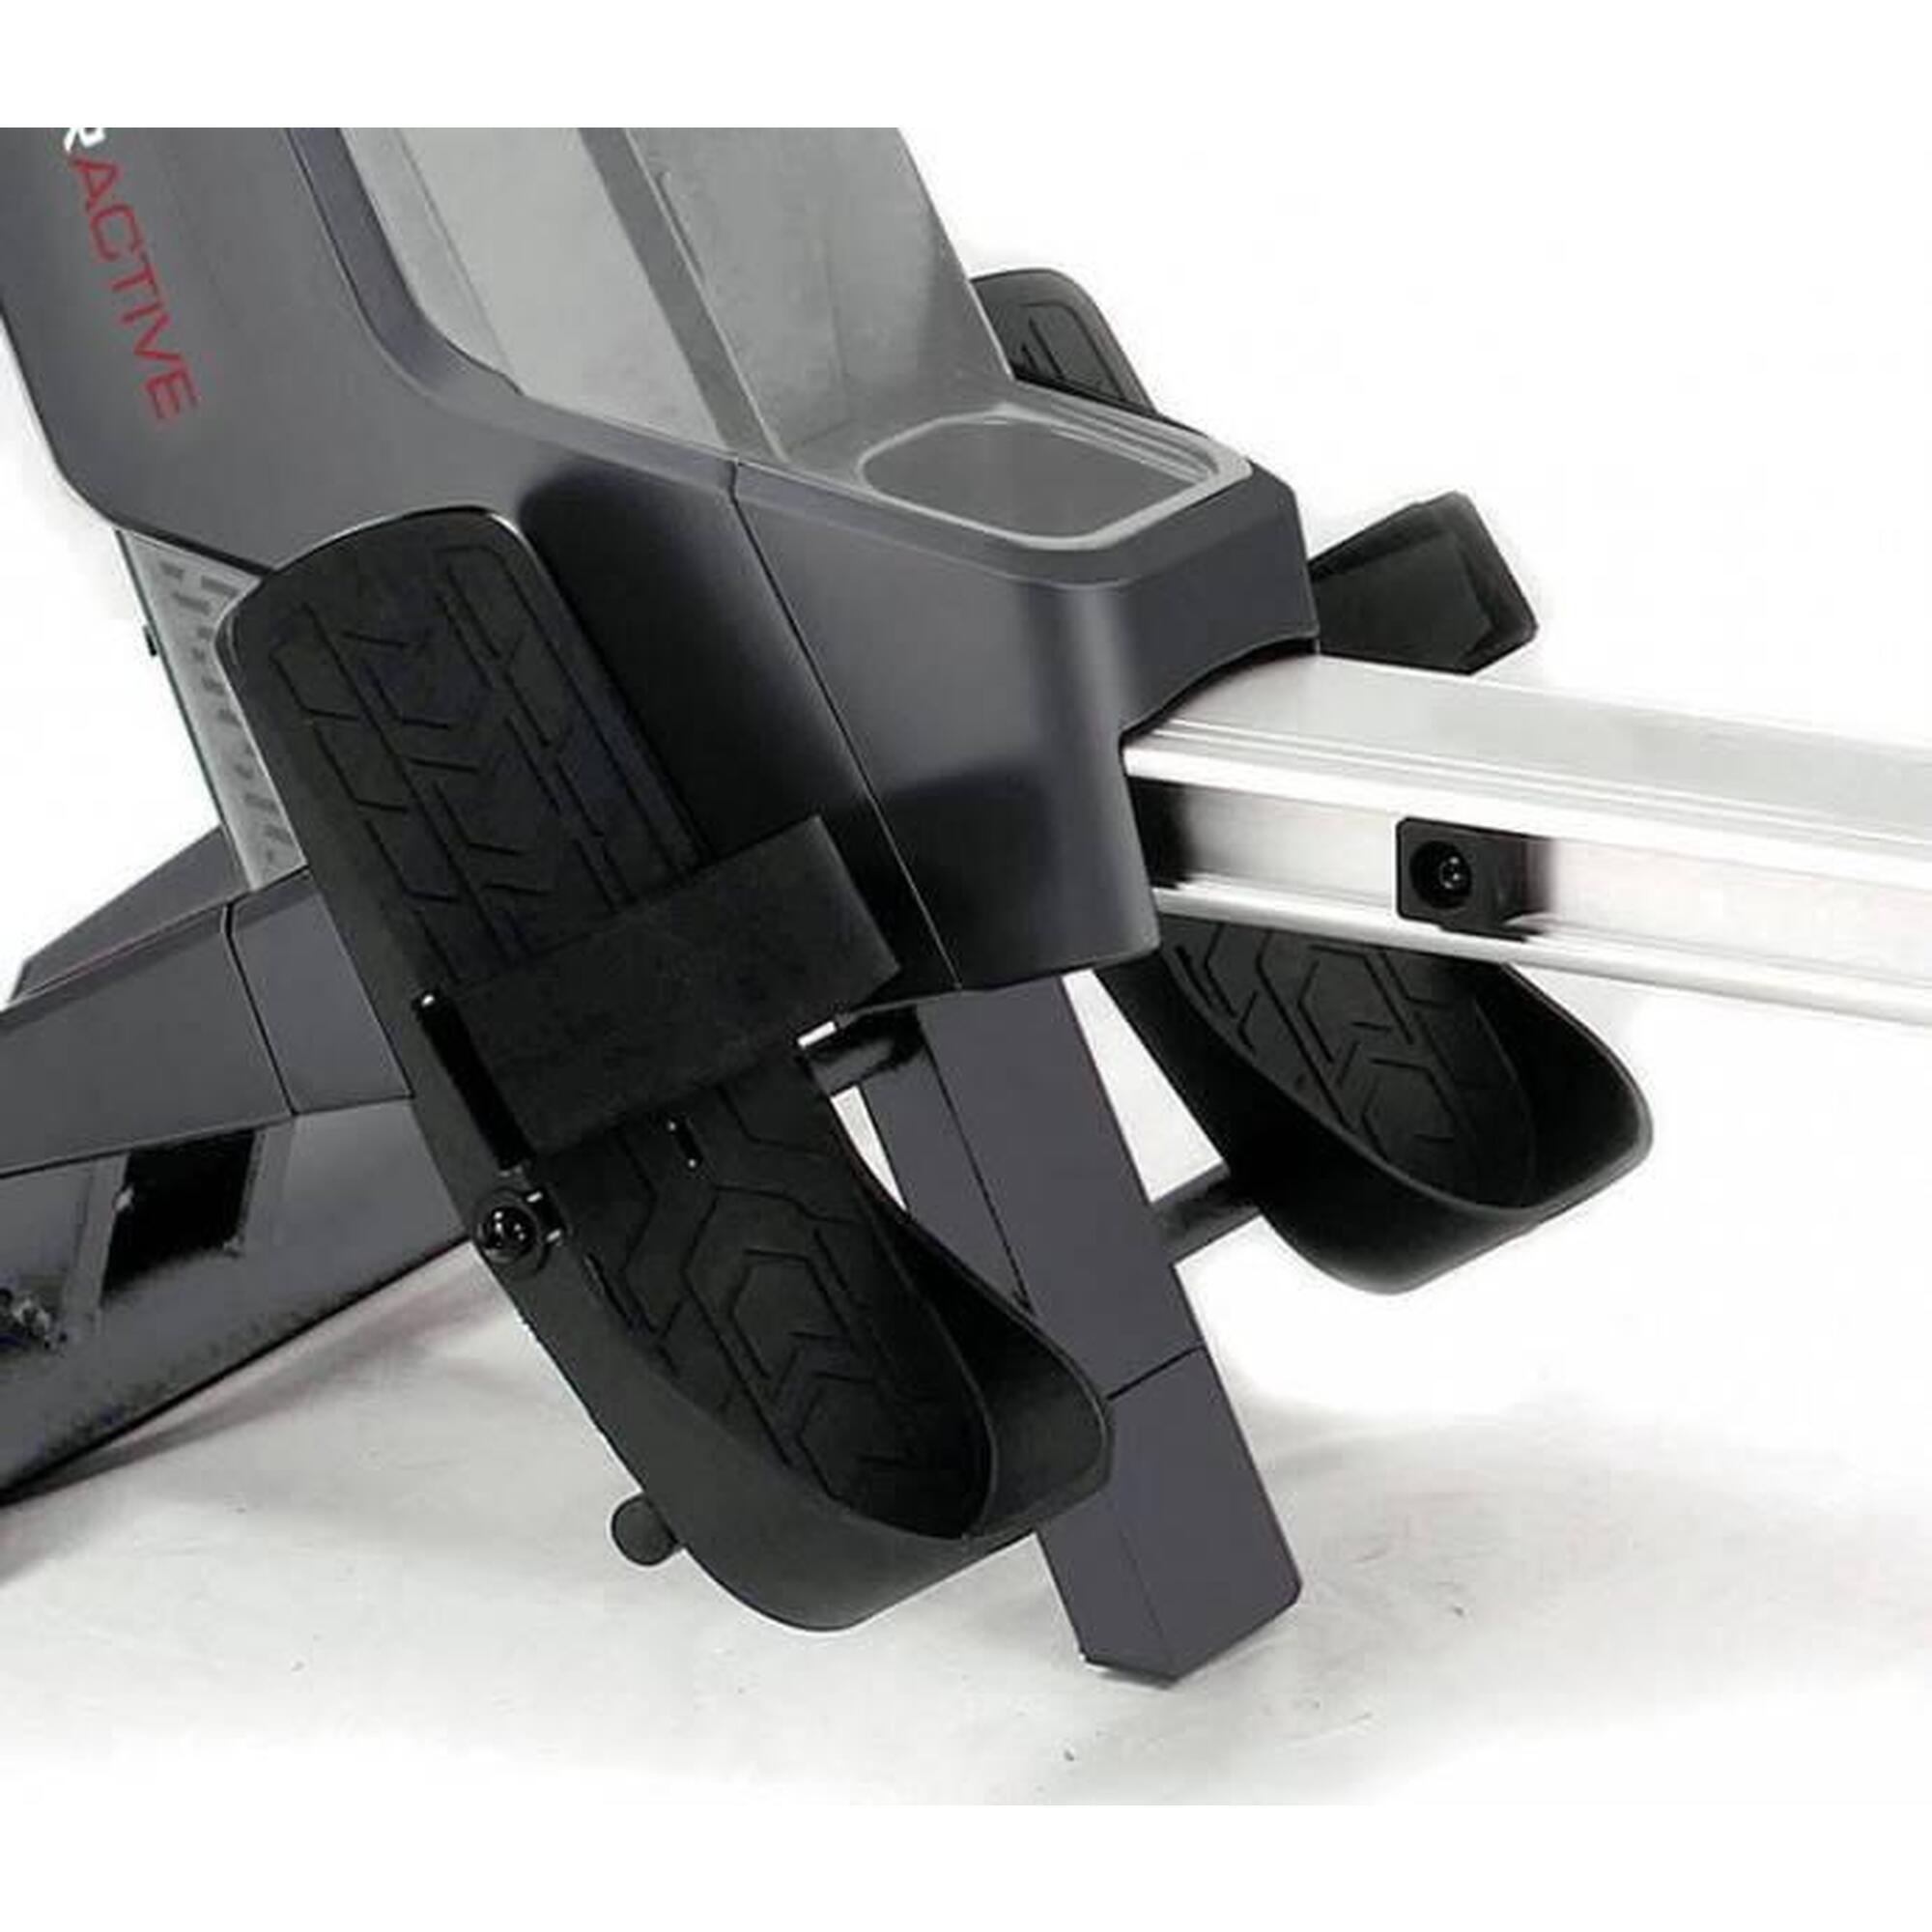 TOORX Rower Active: Máquina de remo compacta, resistência ajustável, ecrã LCD.